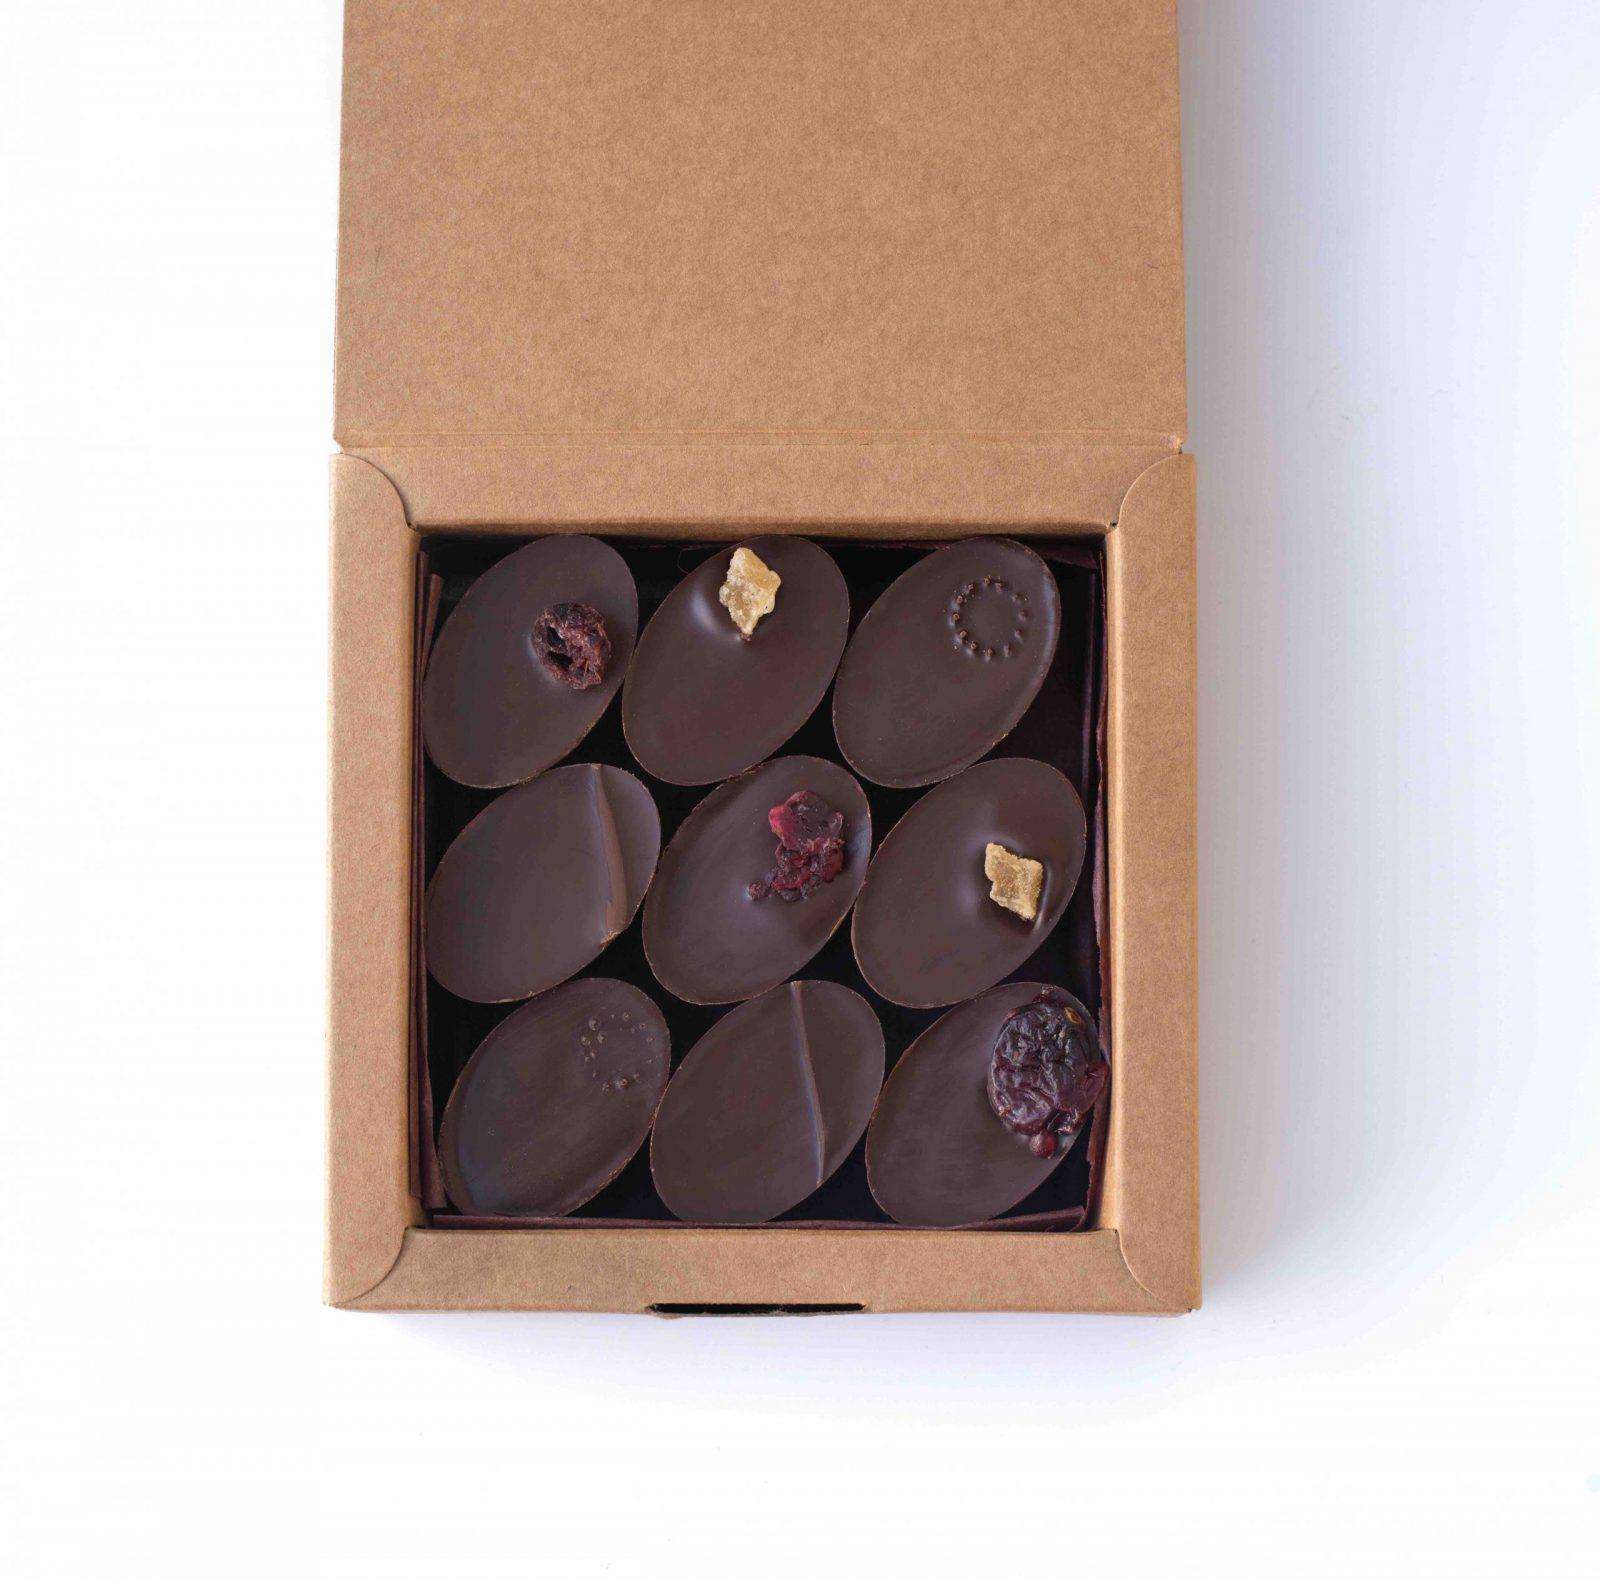 boîte ouverte de 9 chocolats individuels, fourrés avec des ganaches